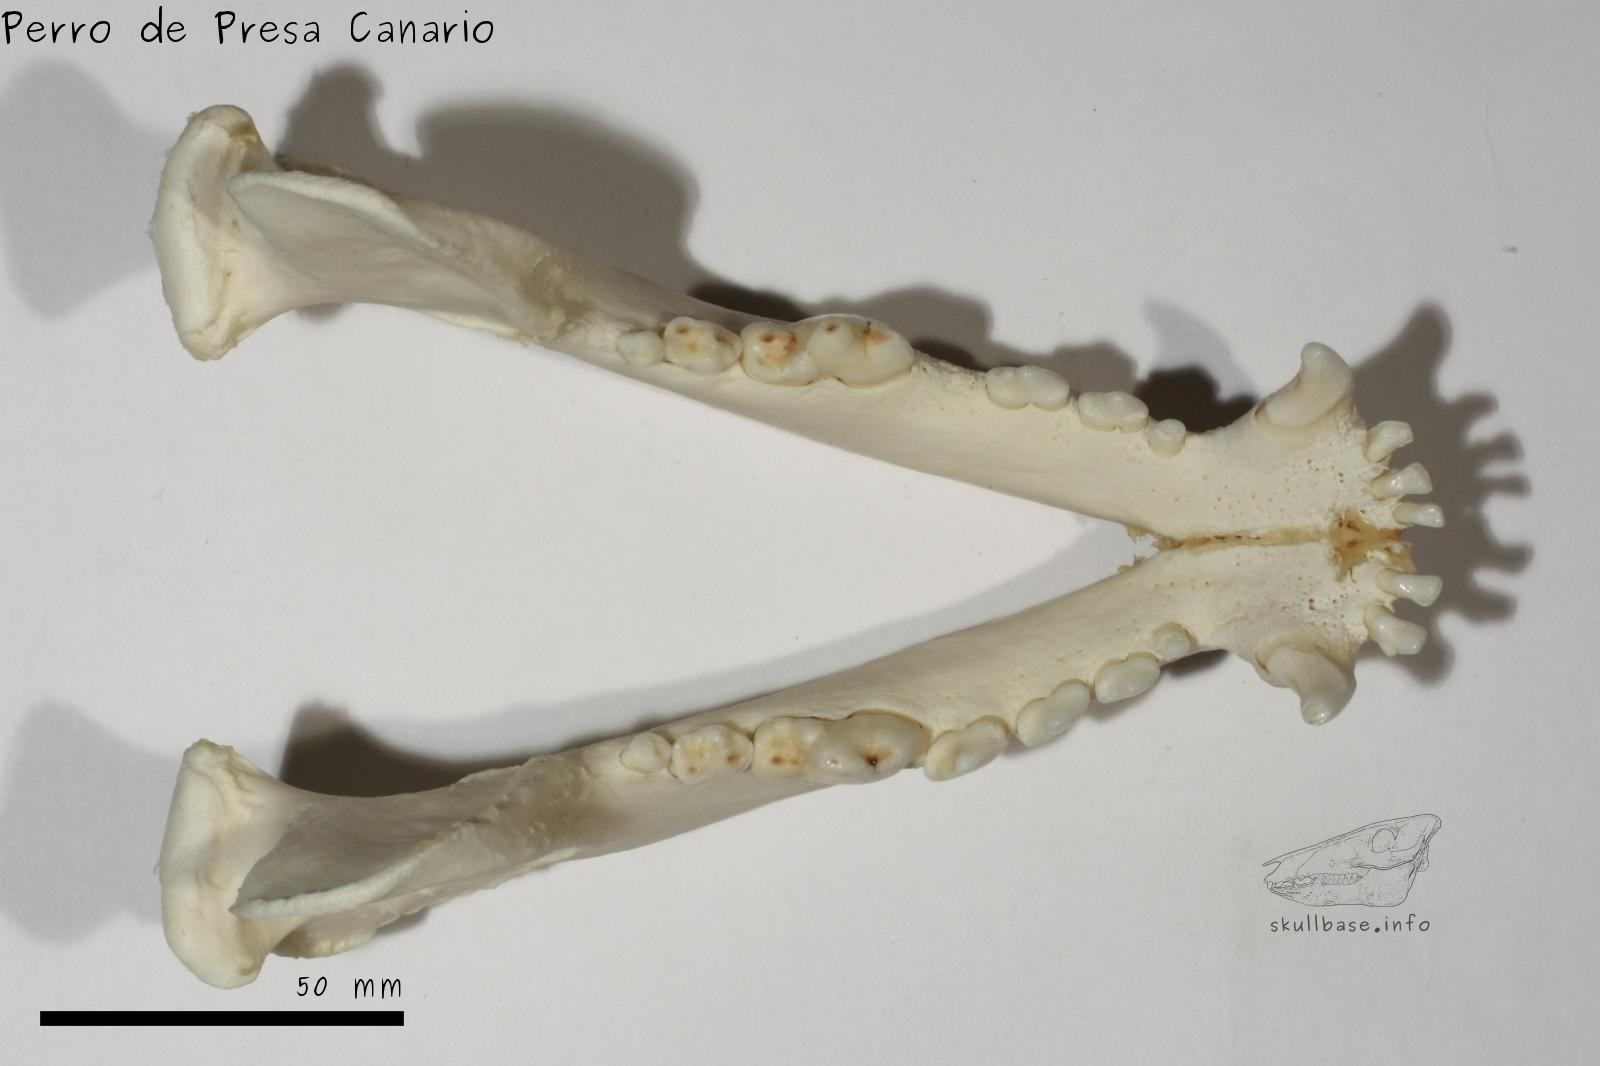 Perro de Presa Canario (Canis lupus familiaris) jaw